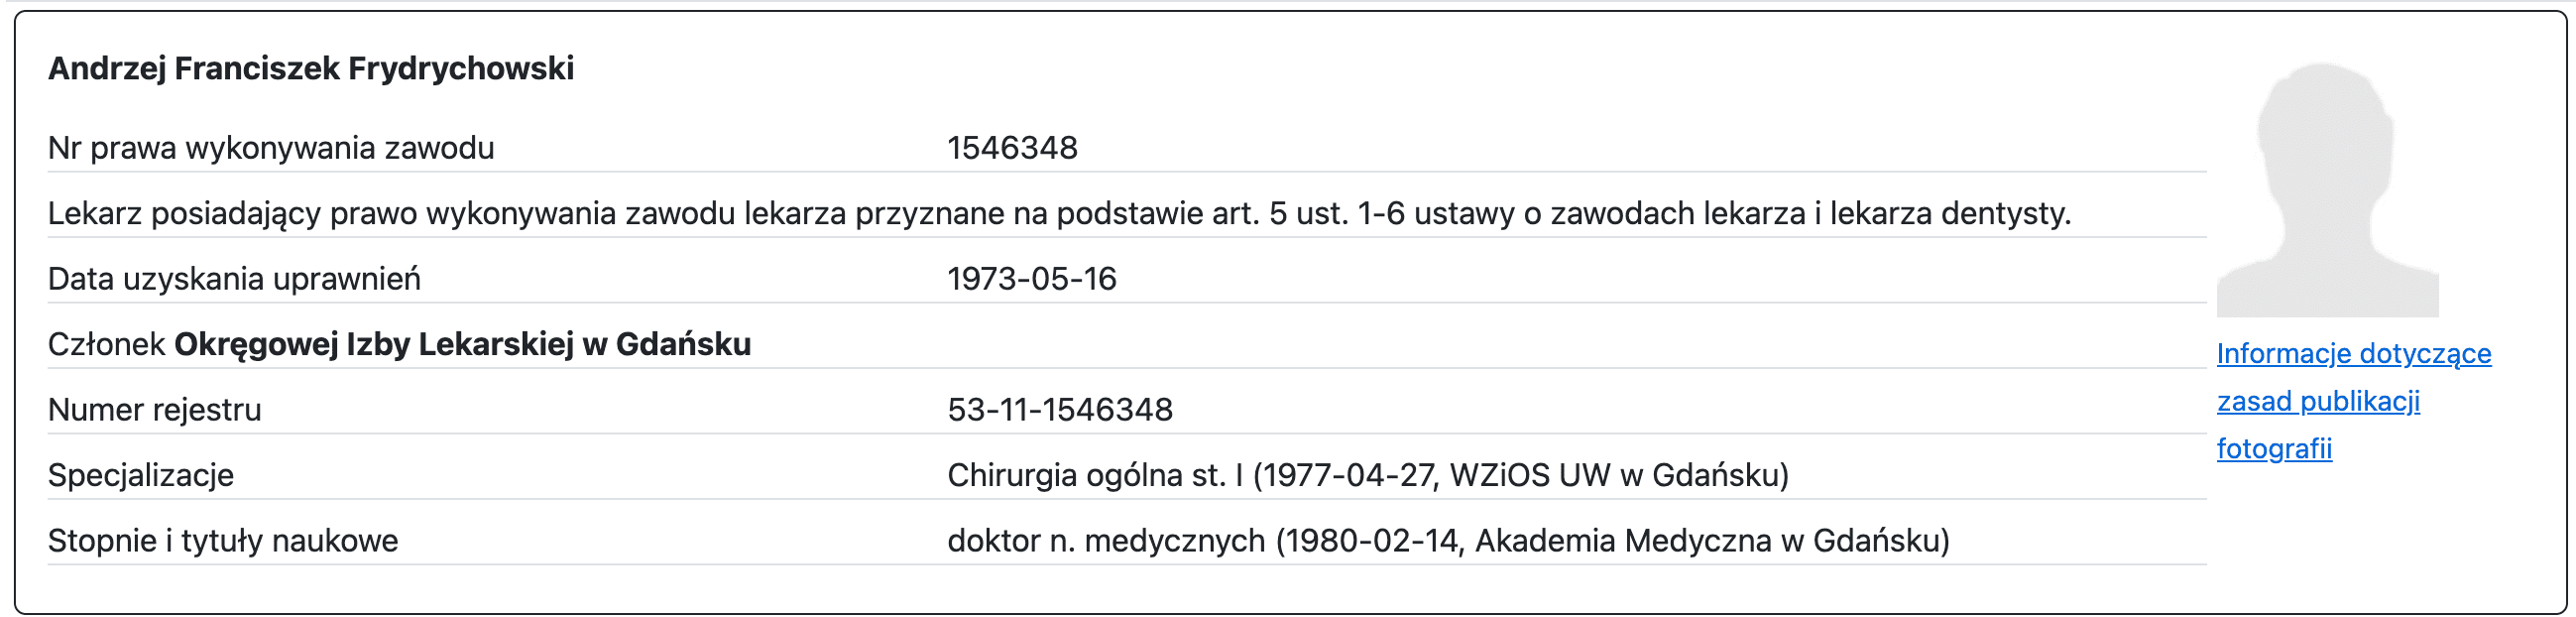 Zrzut ekranu profilu Andrzeja Frydrychowskiego w rejestrze lekarzy prowadzonym przez Naczelną Izbę Lekarską.